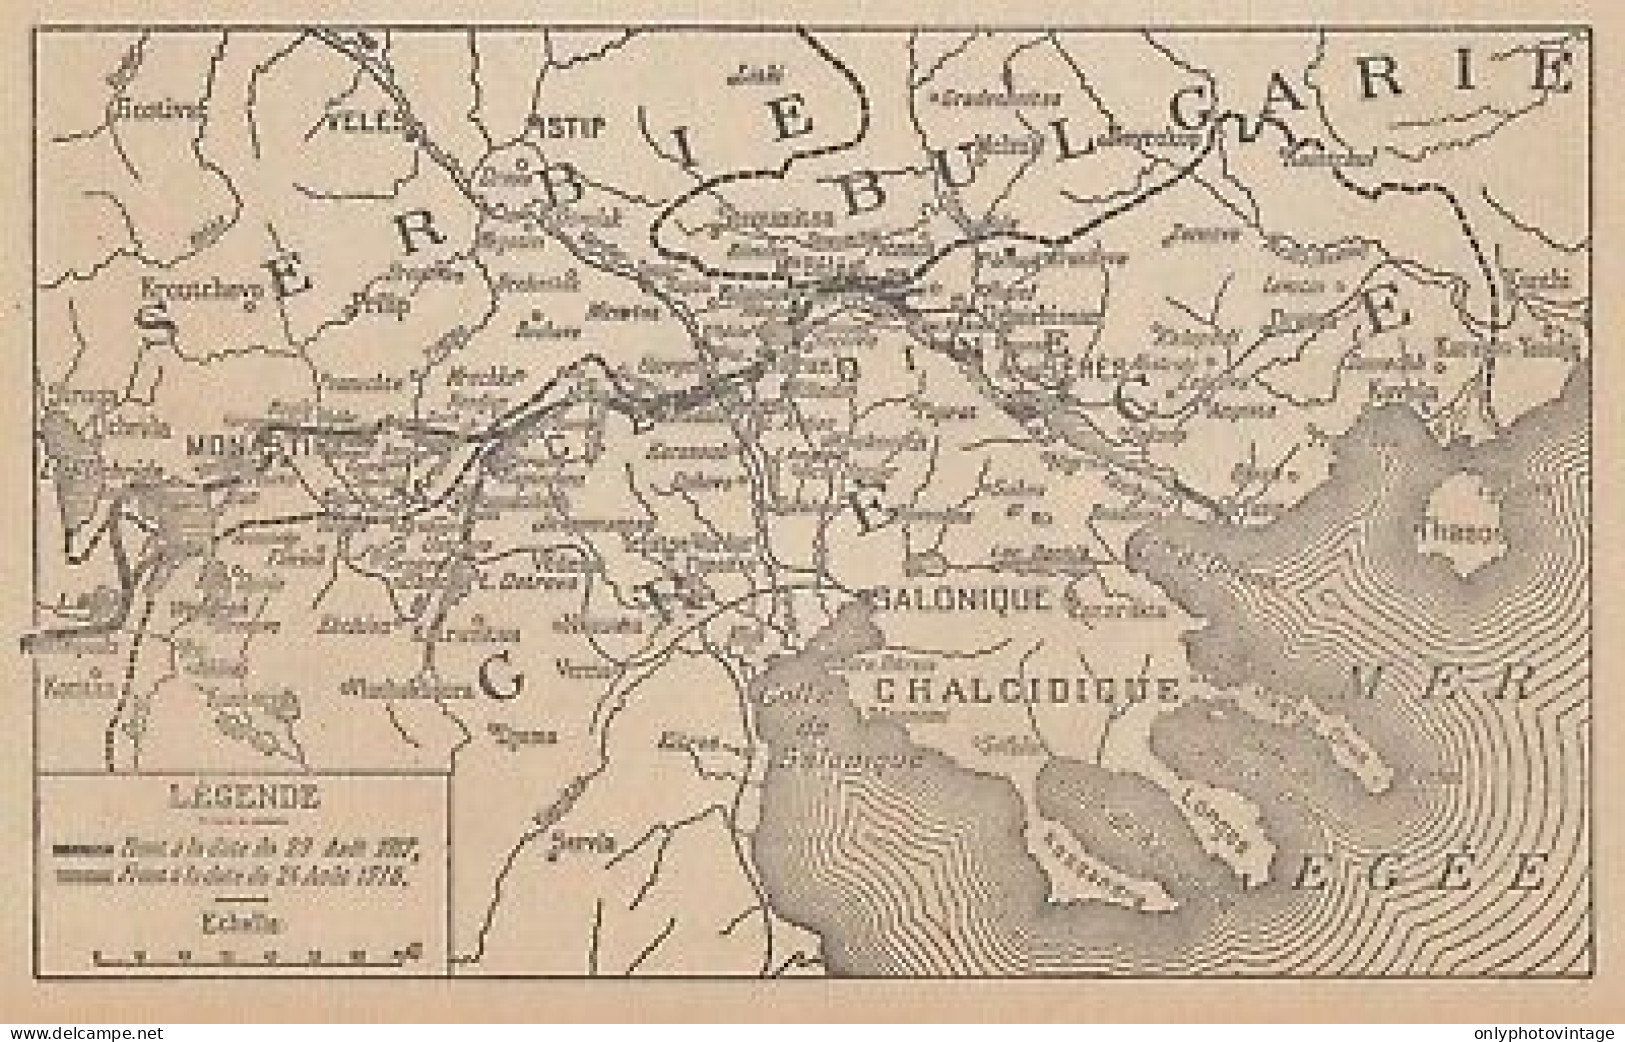 Première Guerre Mondiale - Les Opérations En Orient - 1917 Vintage Map - Landkarten